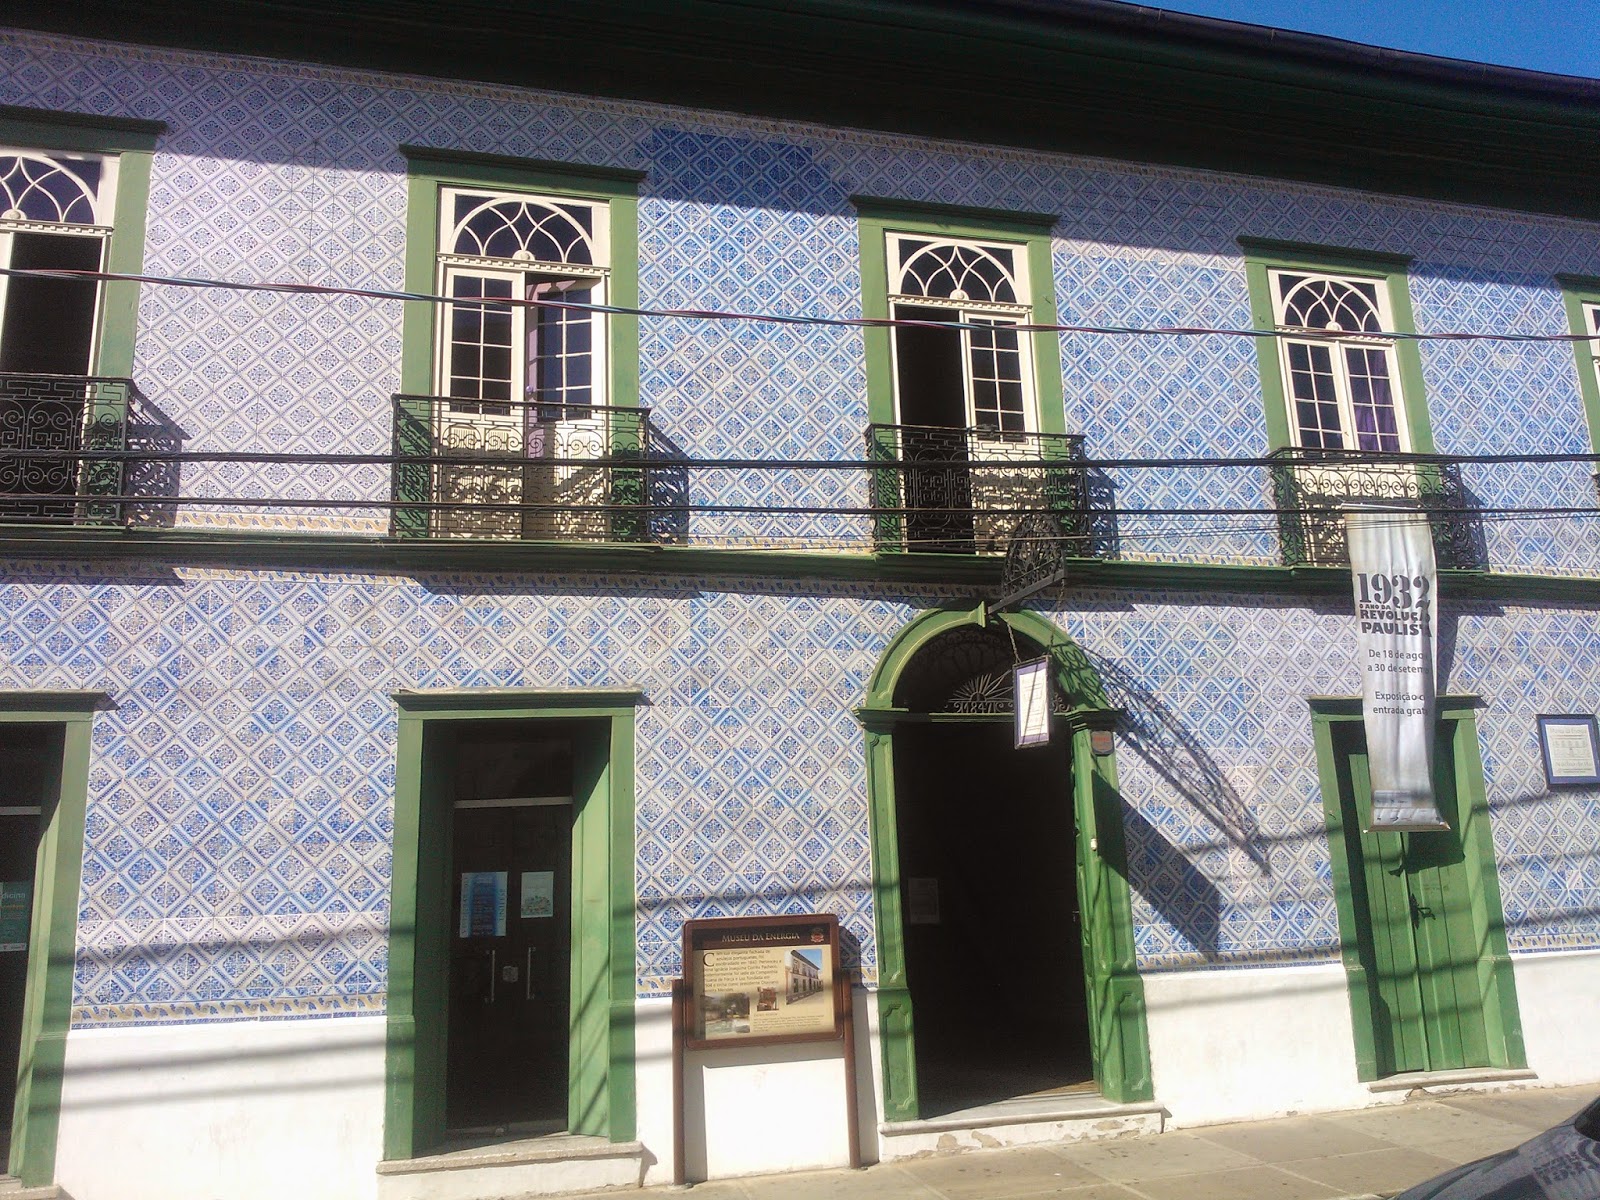 fachada com azulejos portugueses do Museu da Energia, Itu-SP